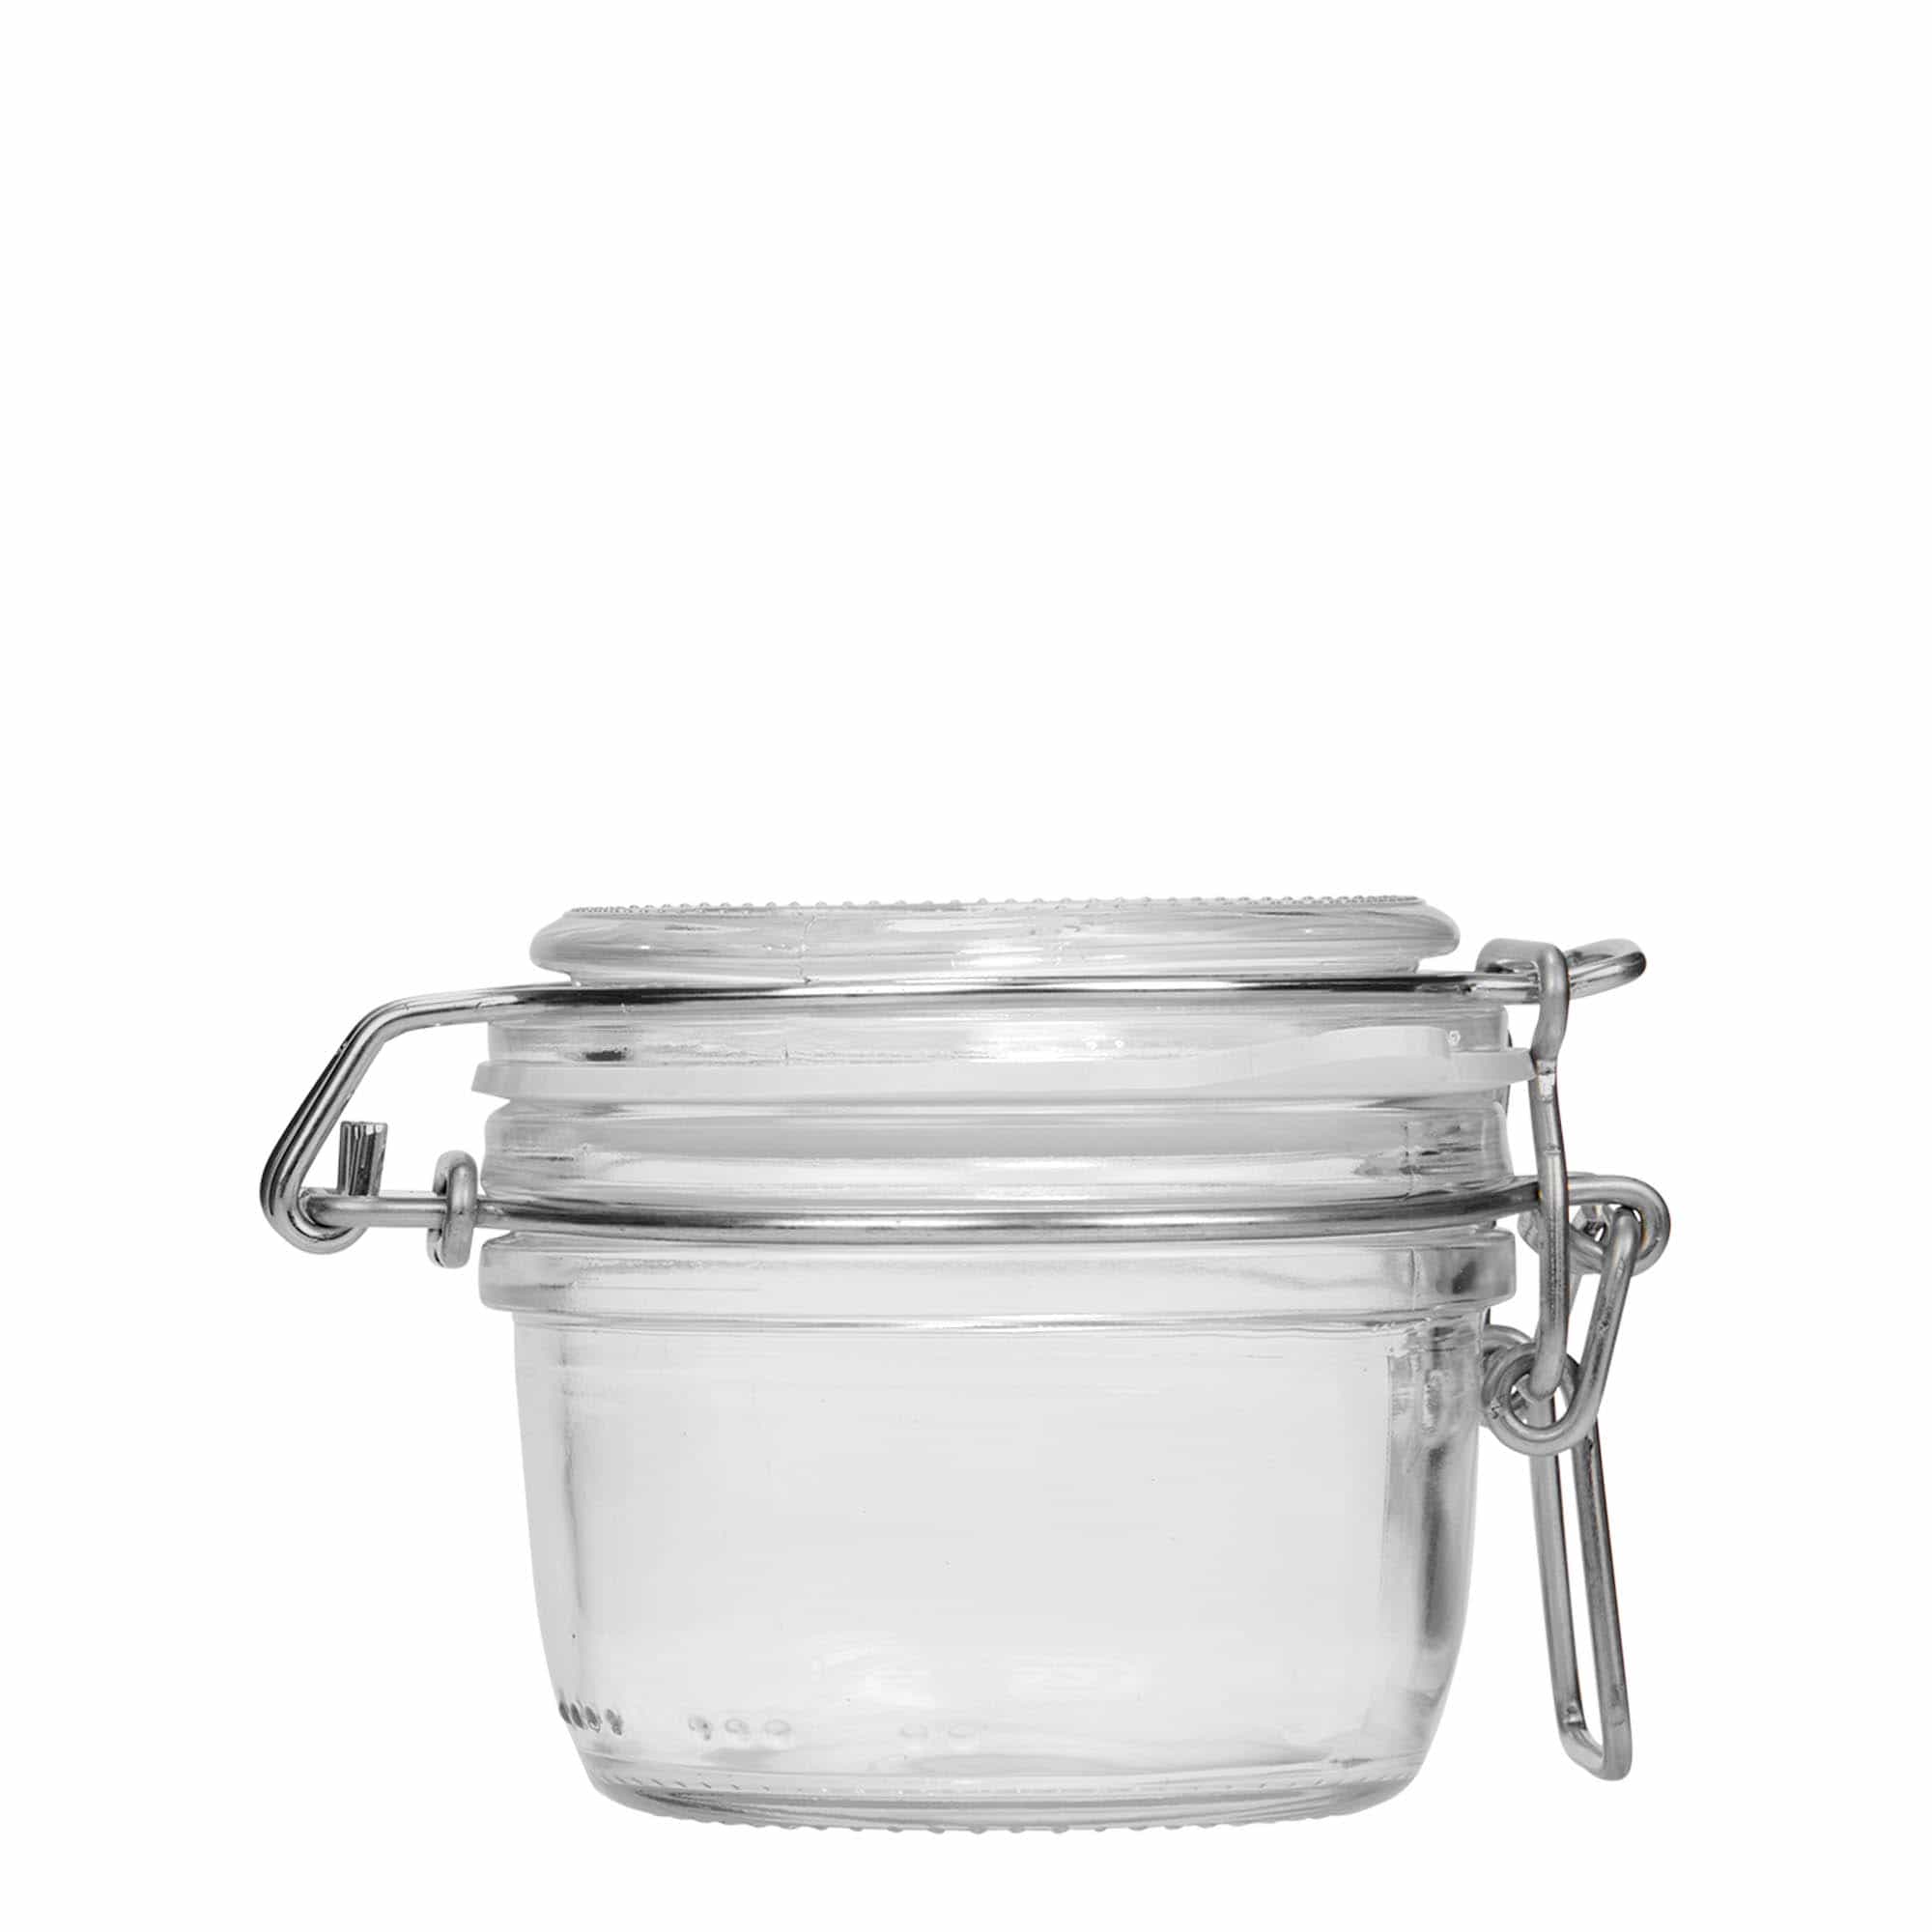 125 ml clip top jar 'Fido', closure: clip top